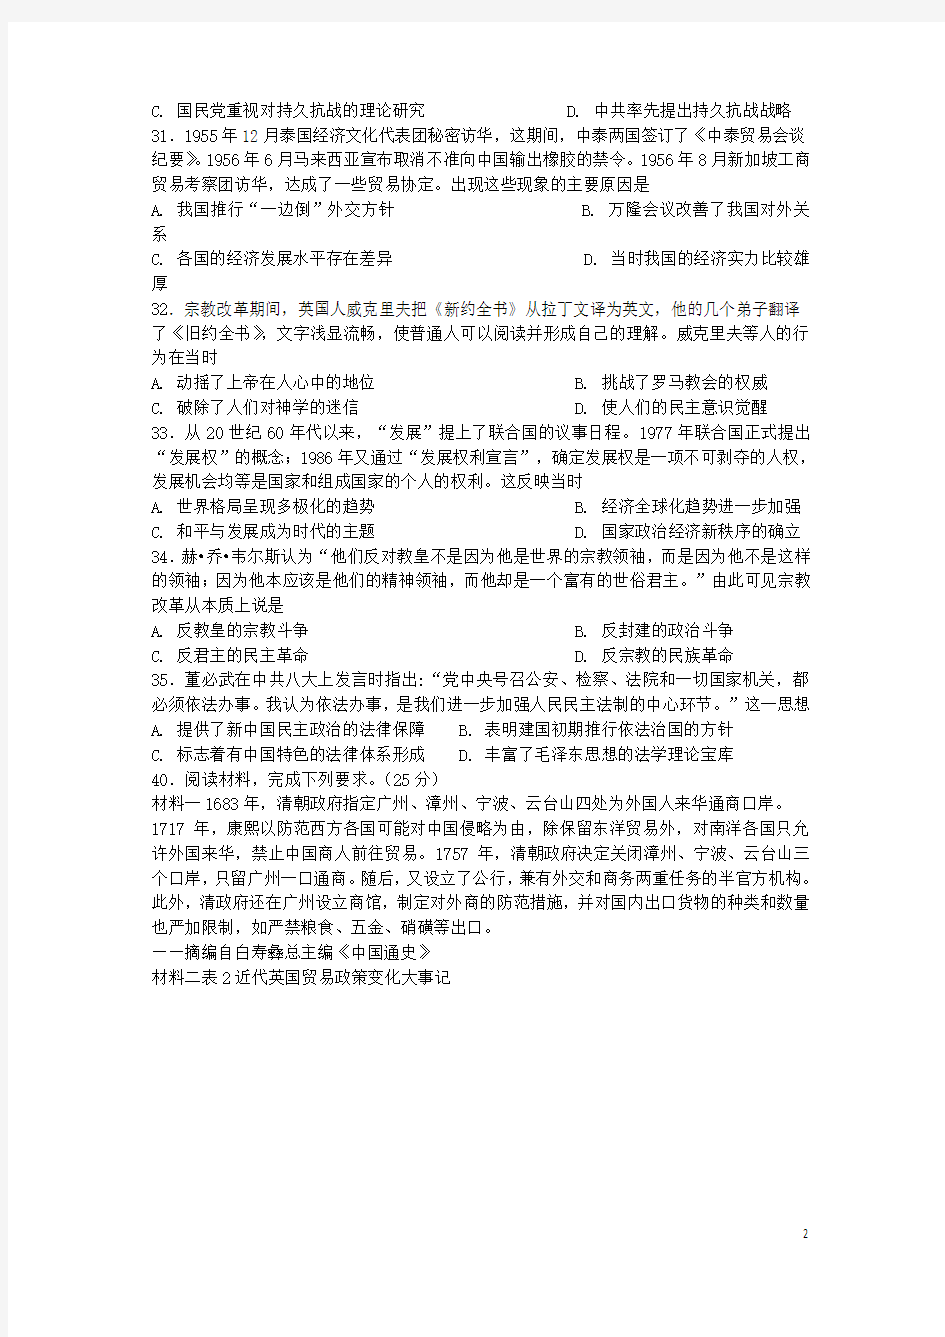 四川省宜宾县第一中学2018届高考历史适应性最后一模考试试题